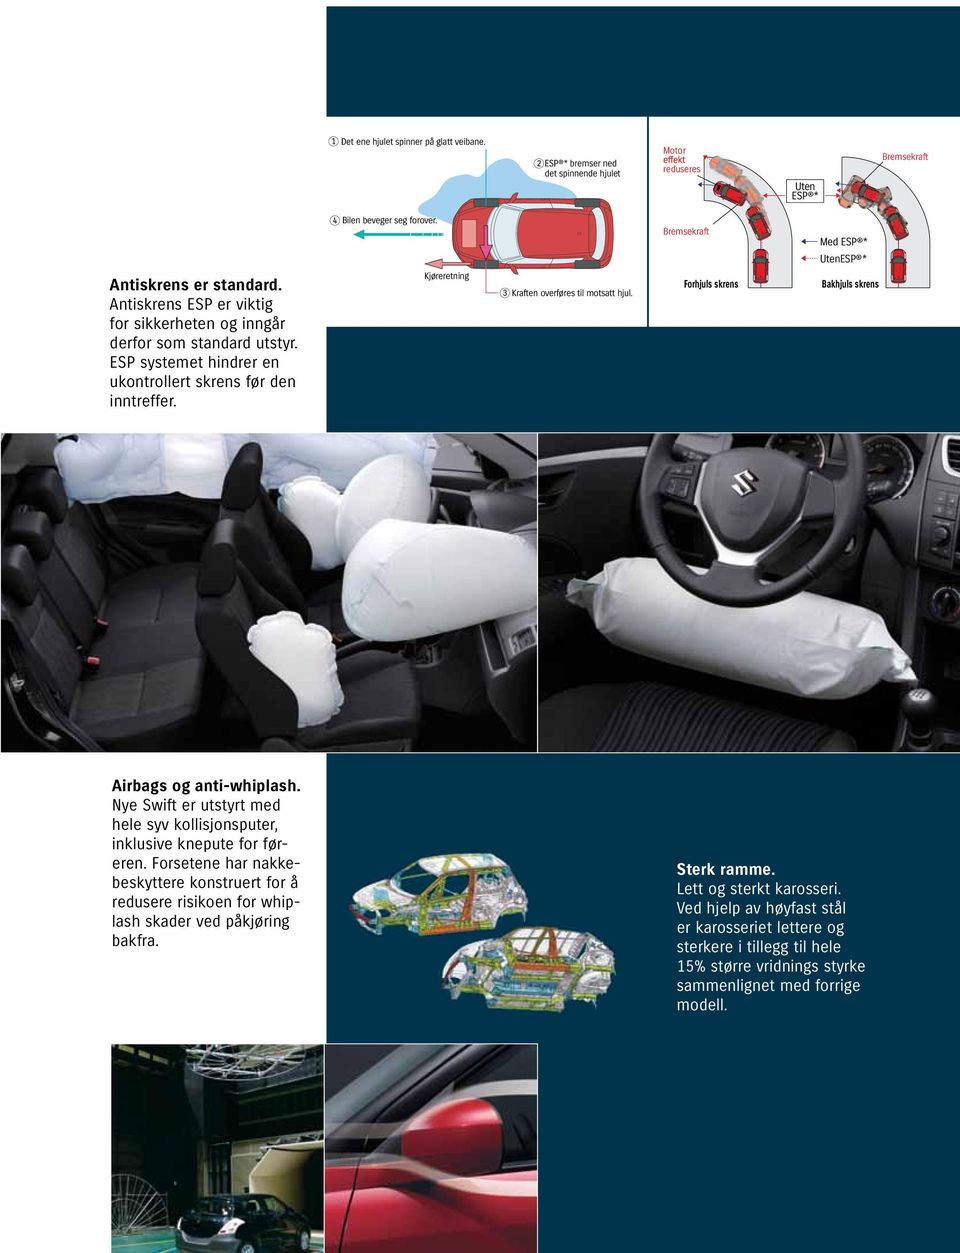 Forhjuls skrens Bakhjuls skrens Airbags og anti-whiplash. Nye wift er utstyrt med hele syv kollisjonsputer, inklusive knepute for føreren.